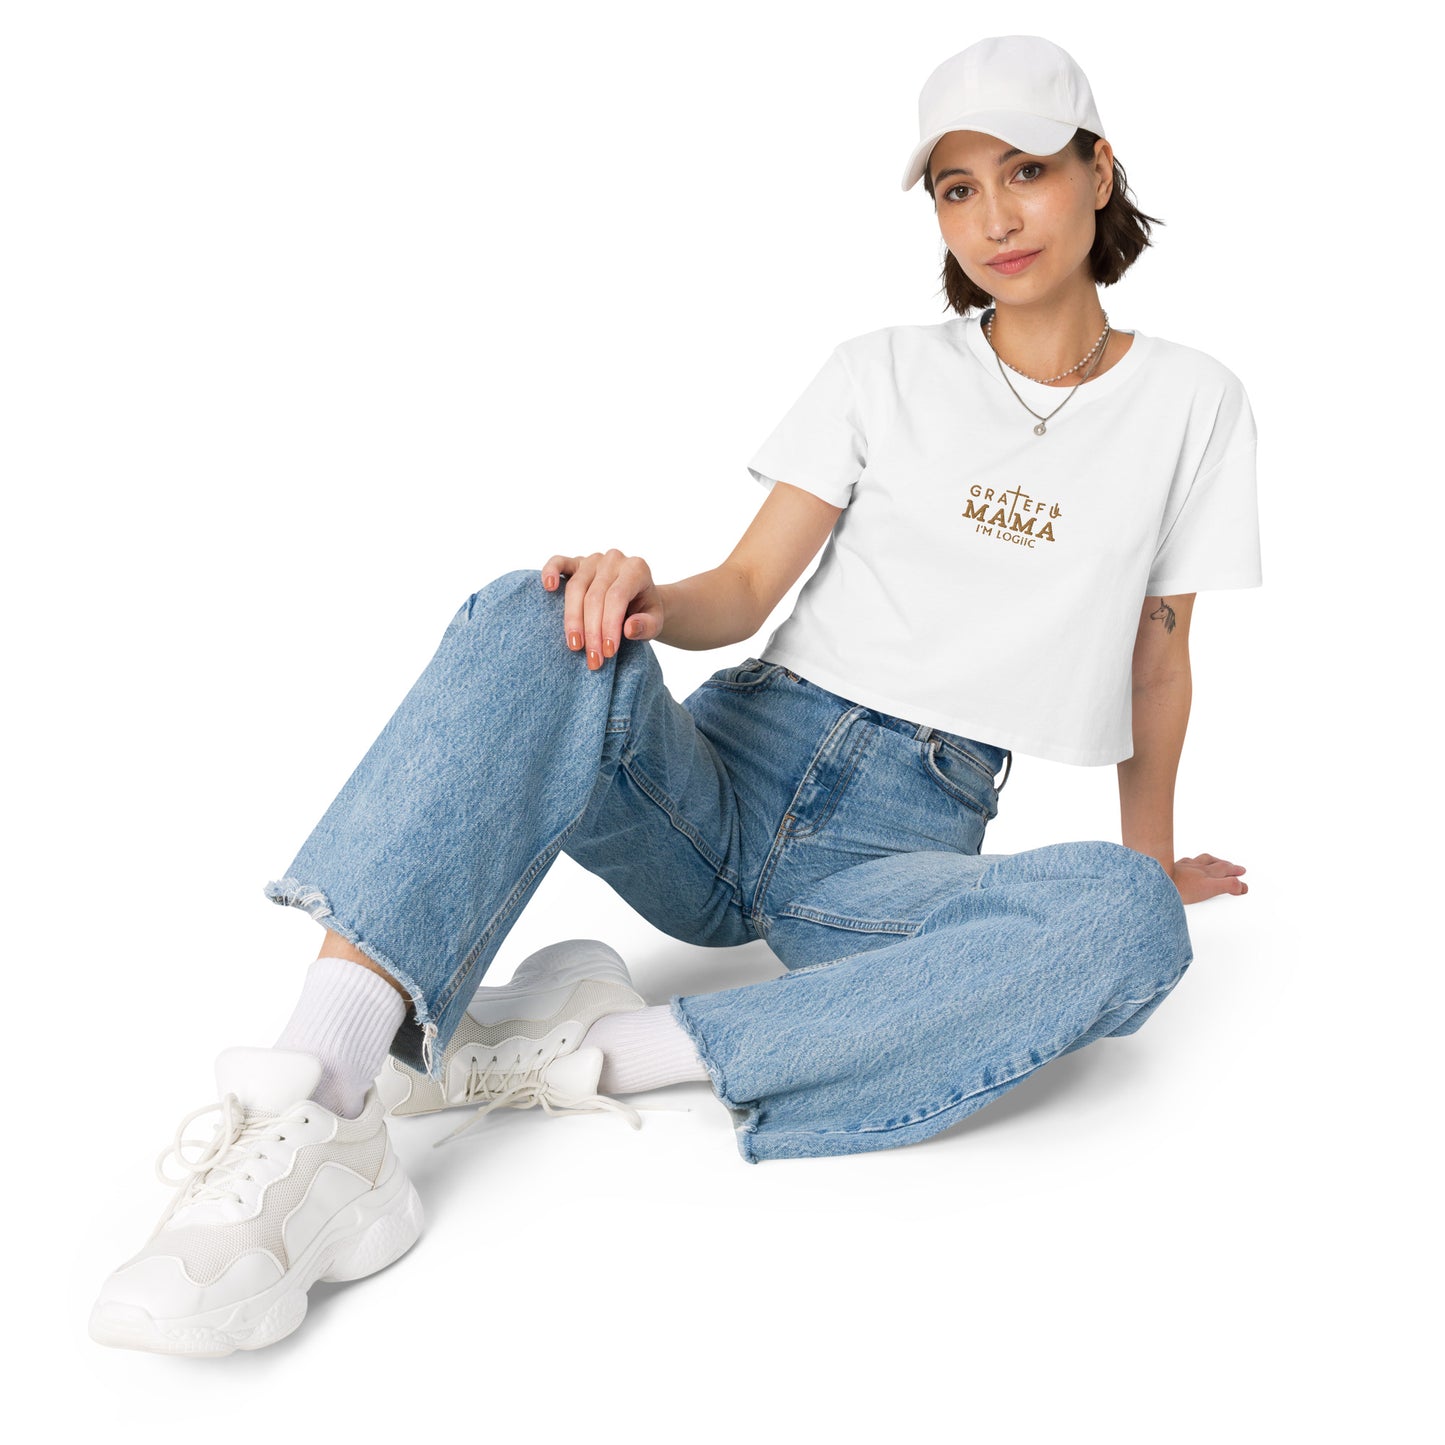 Grateful Mama Women’s crop top - White / XS - Shirts & Tops